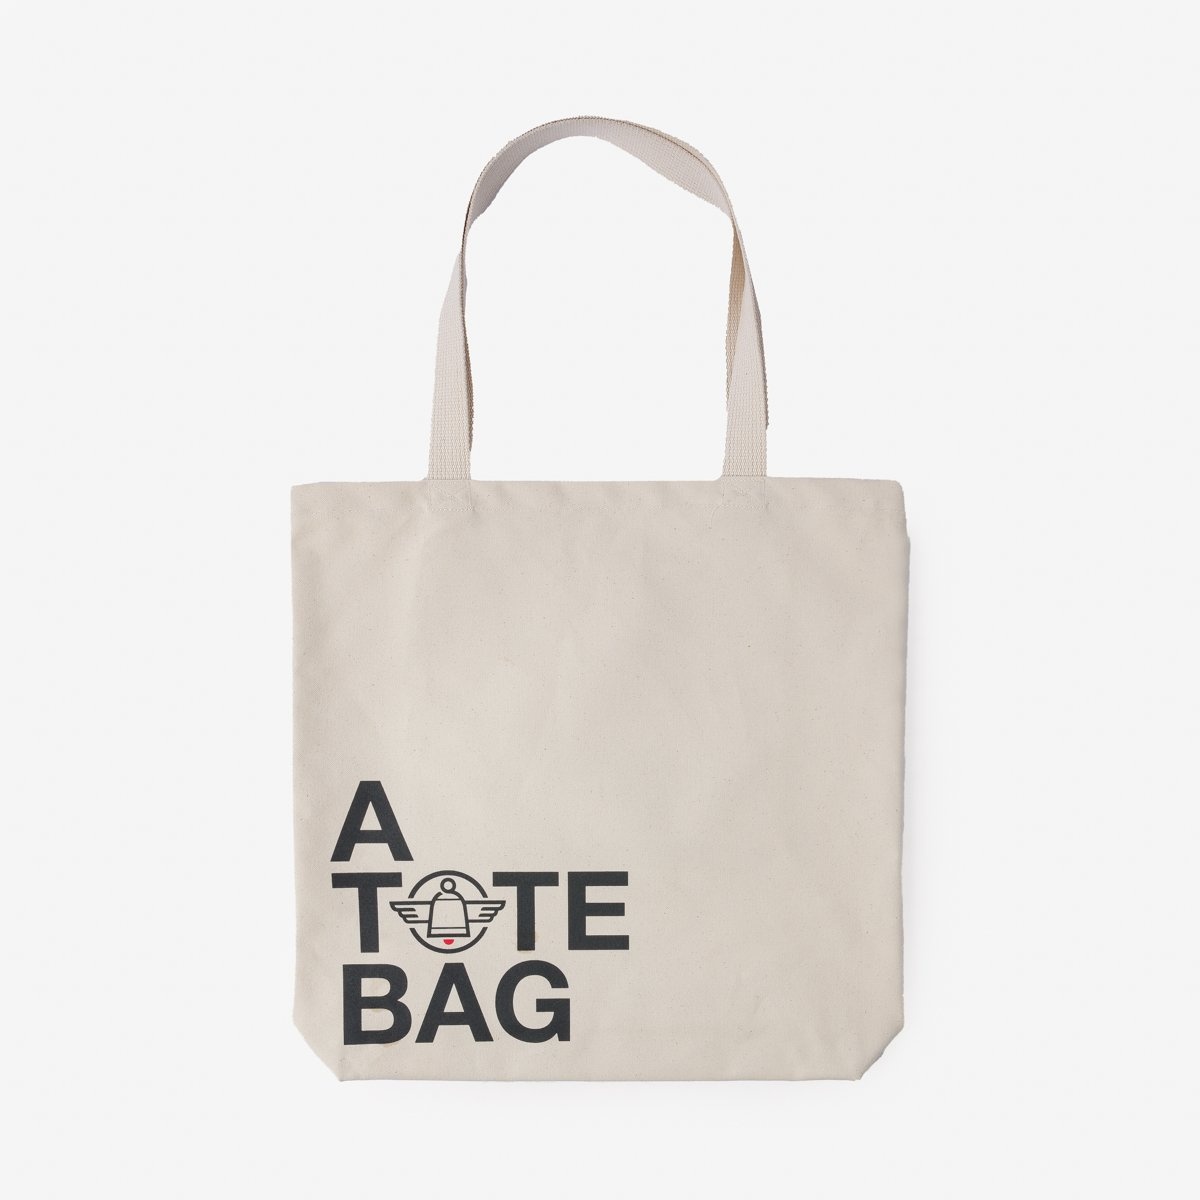 IH-TOTE-ATOTEBAG Printed Canvas Tote Bag - 'A Tote Bag' Print - 3